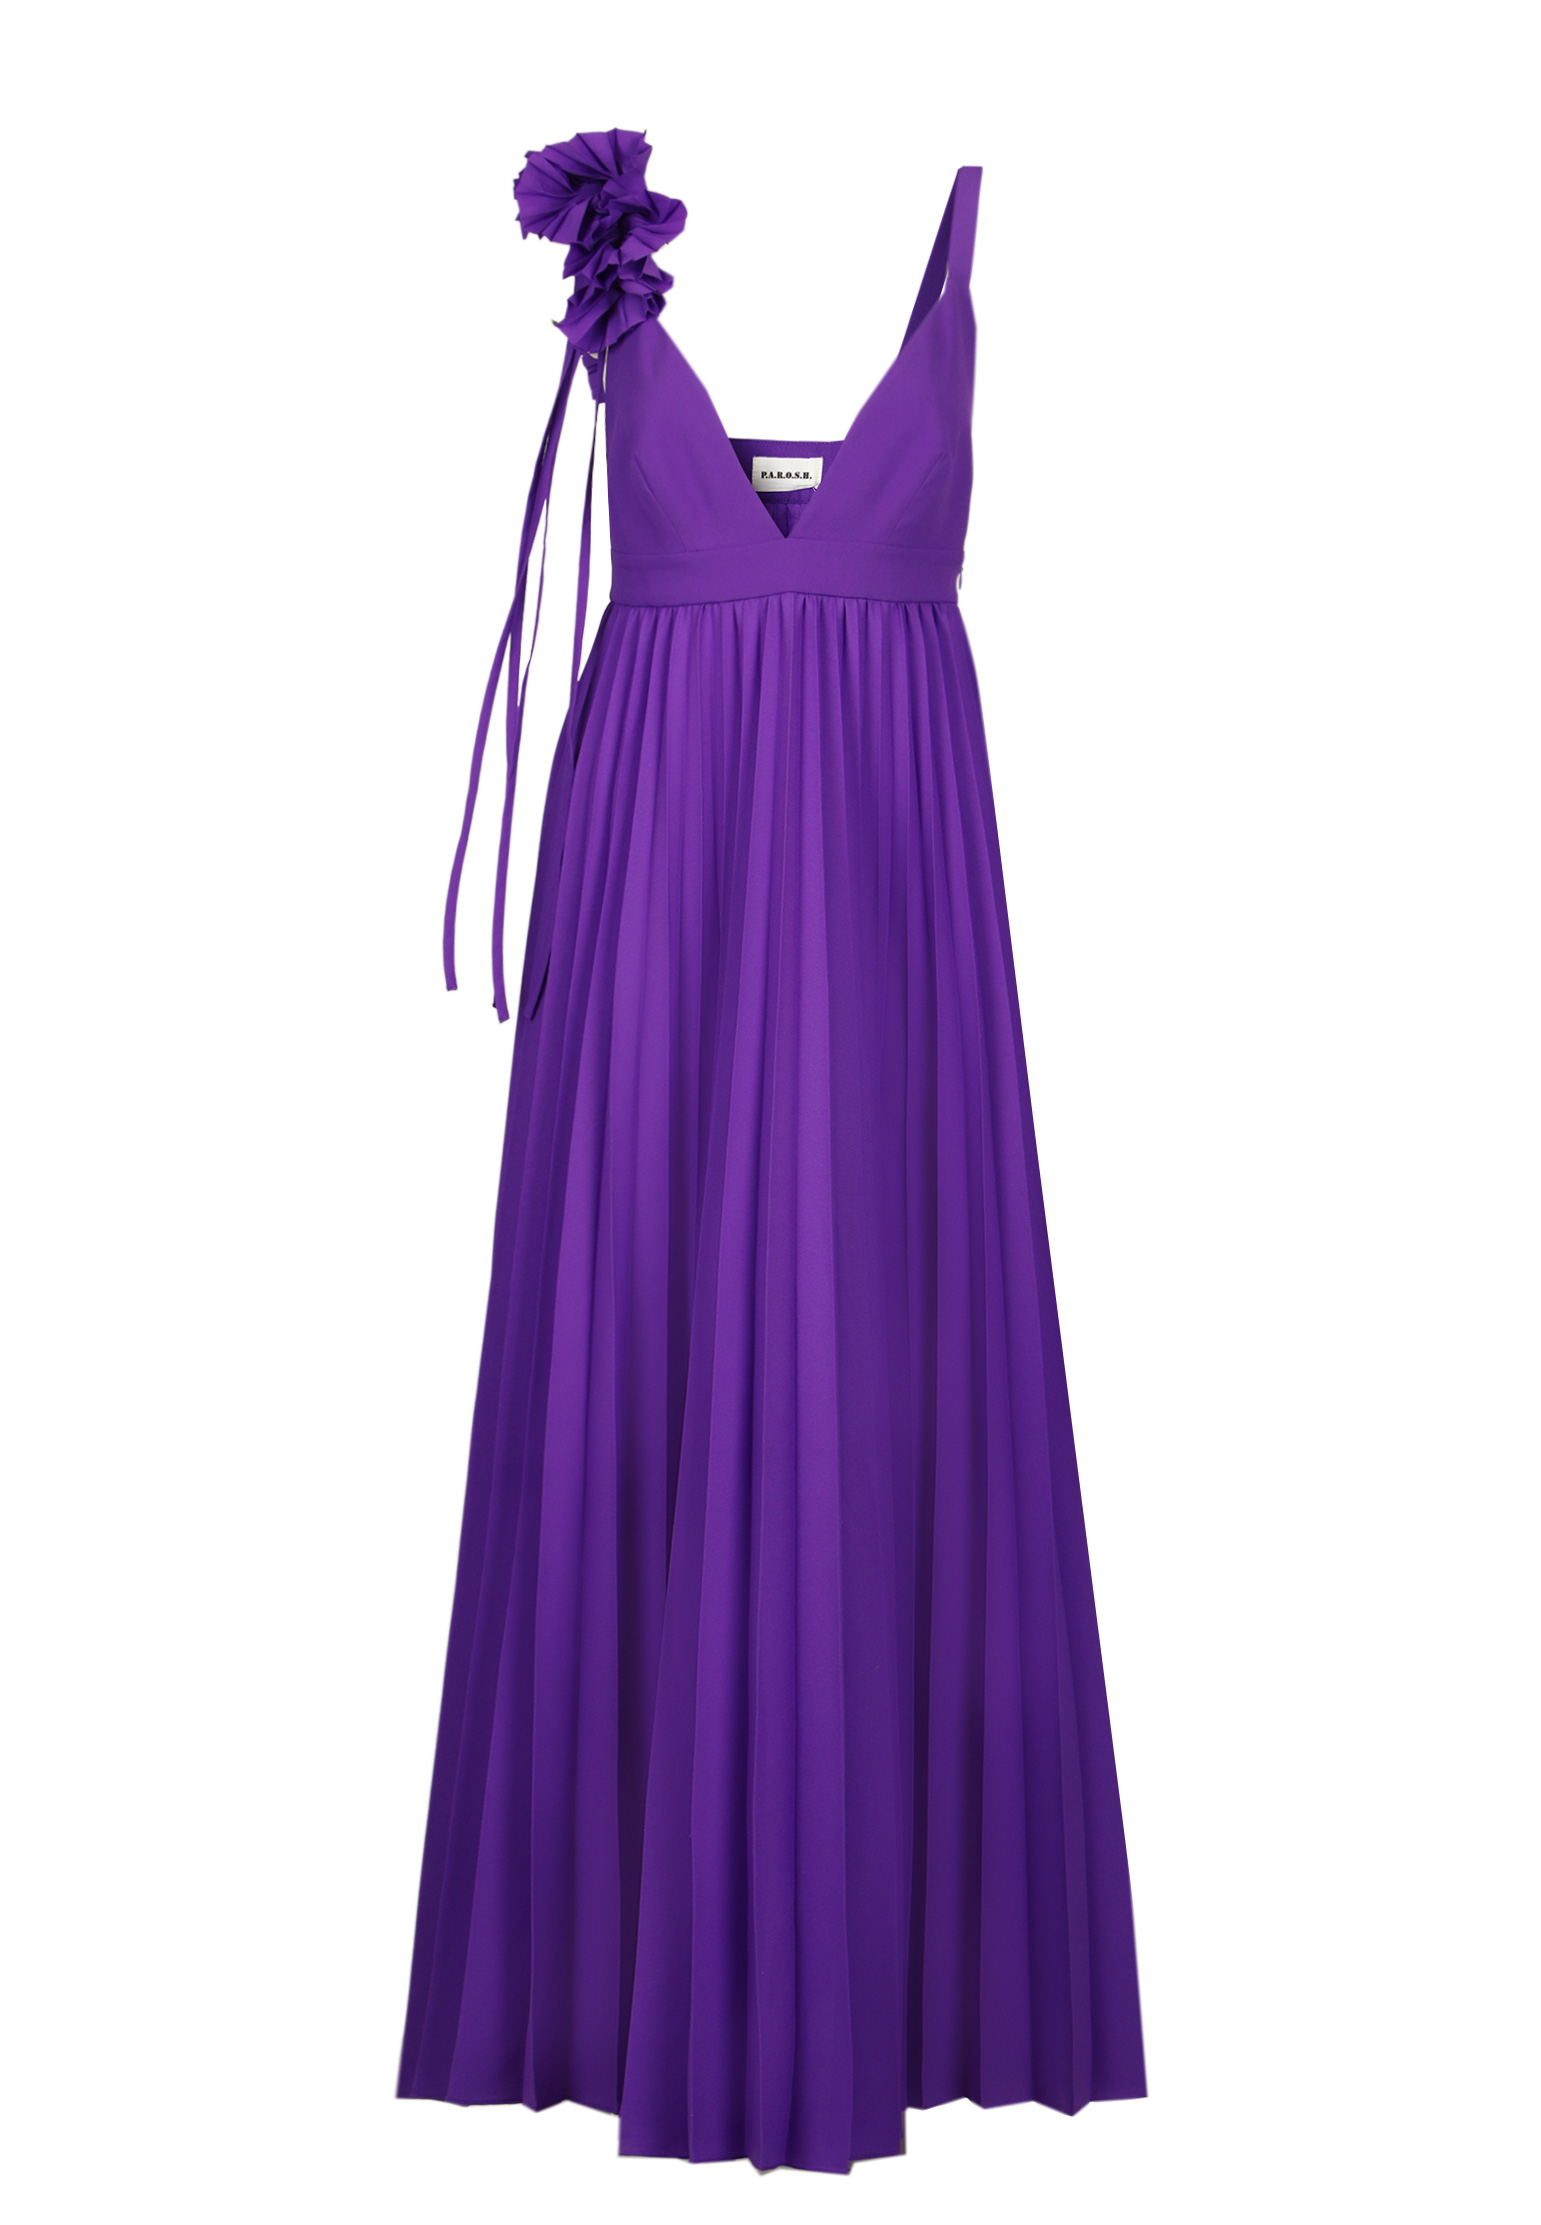 женское вечерние платье p.a.r.o.s.h, фиолетовое